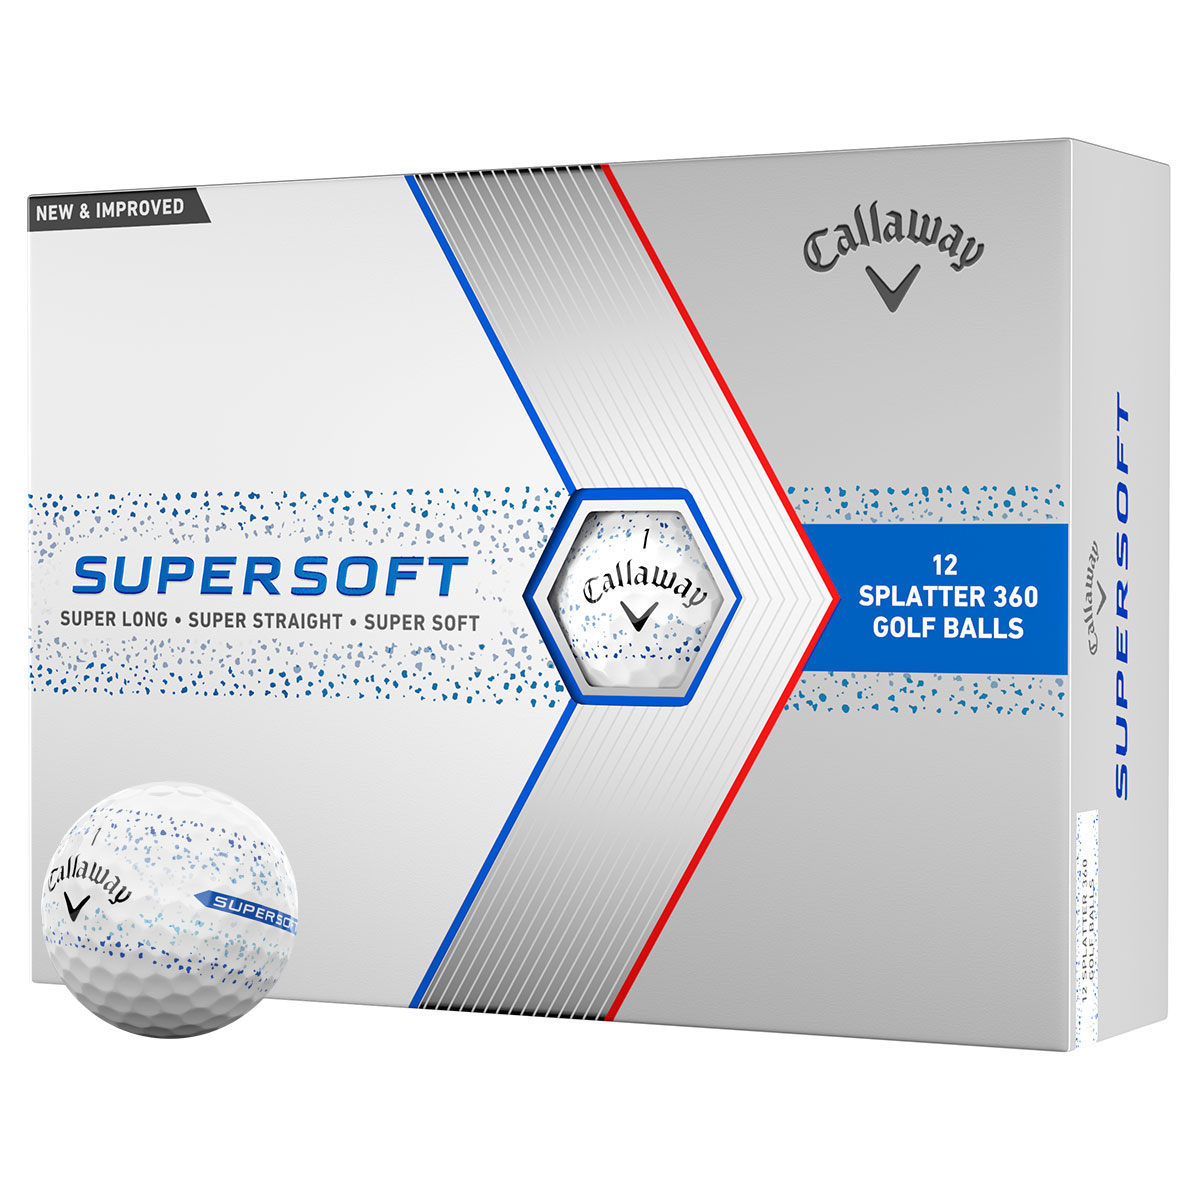 Visual Tech Golf Balls